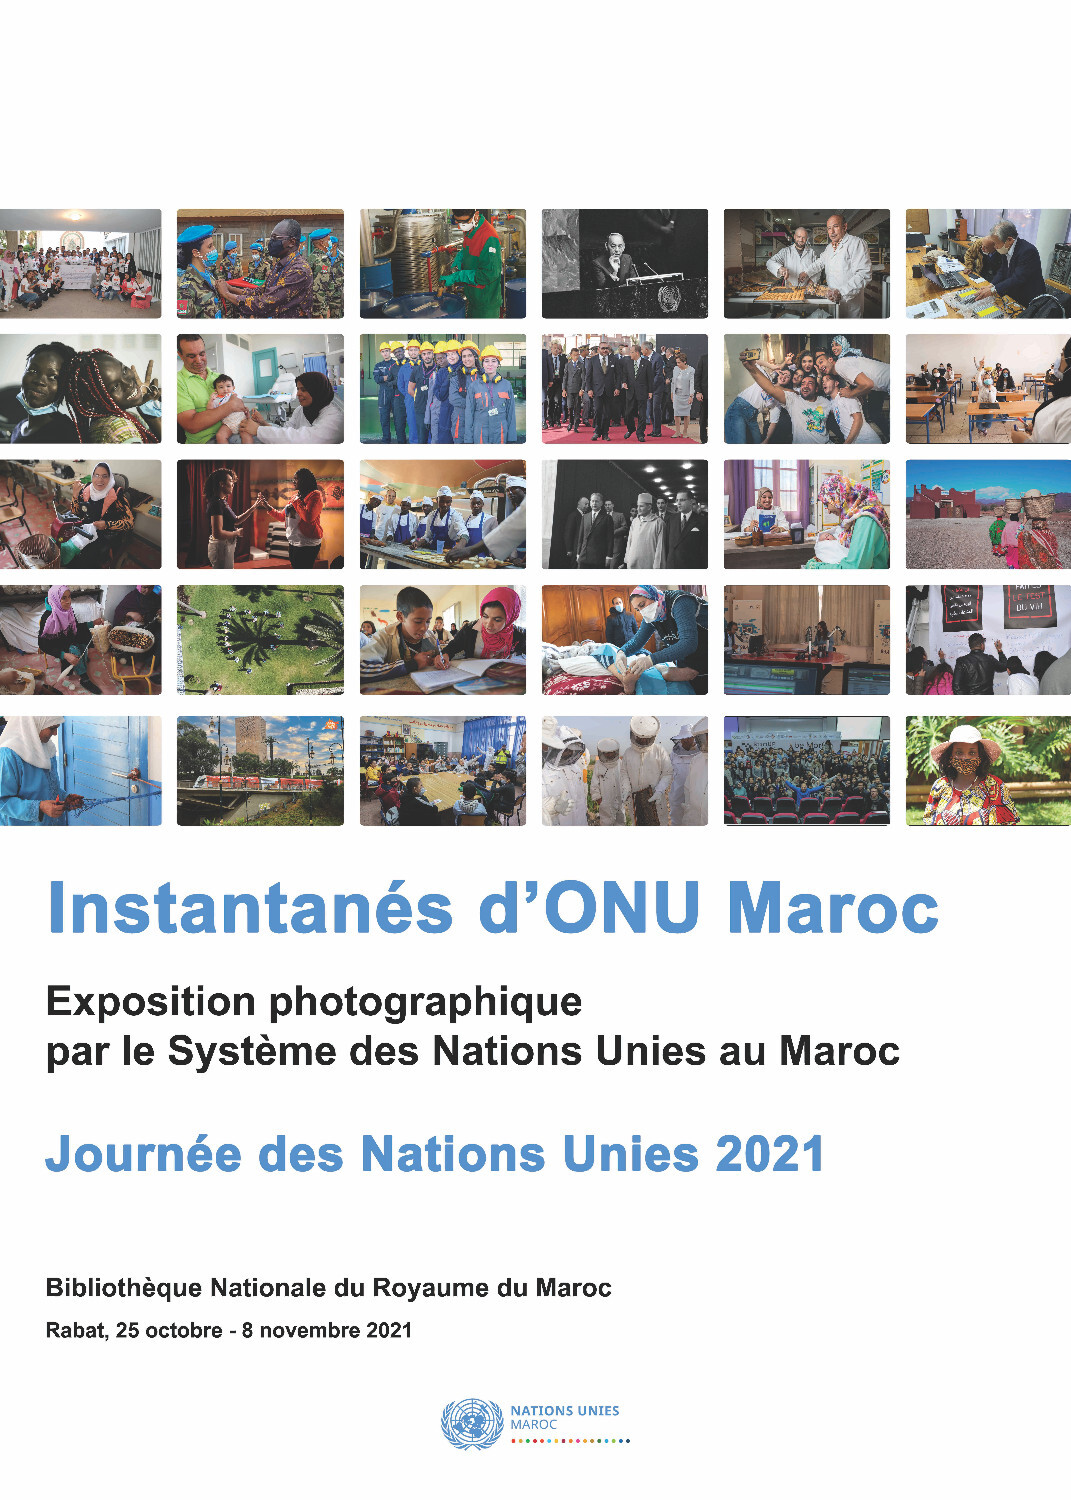 يوم الأمم المتحدة 2021: معرض فوتوغرافي "لقطات من الأمم المتحدة في المغرب" #InstantanésONUMaroc